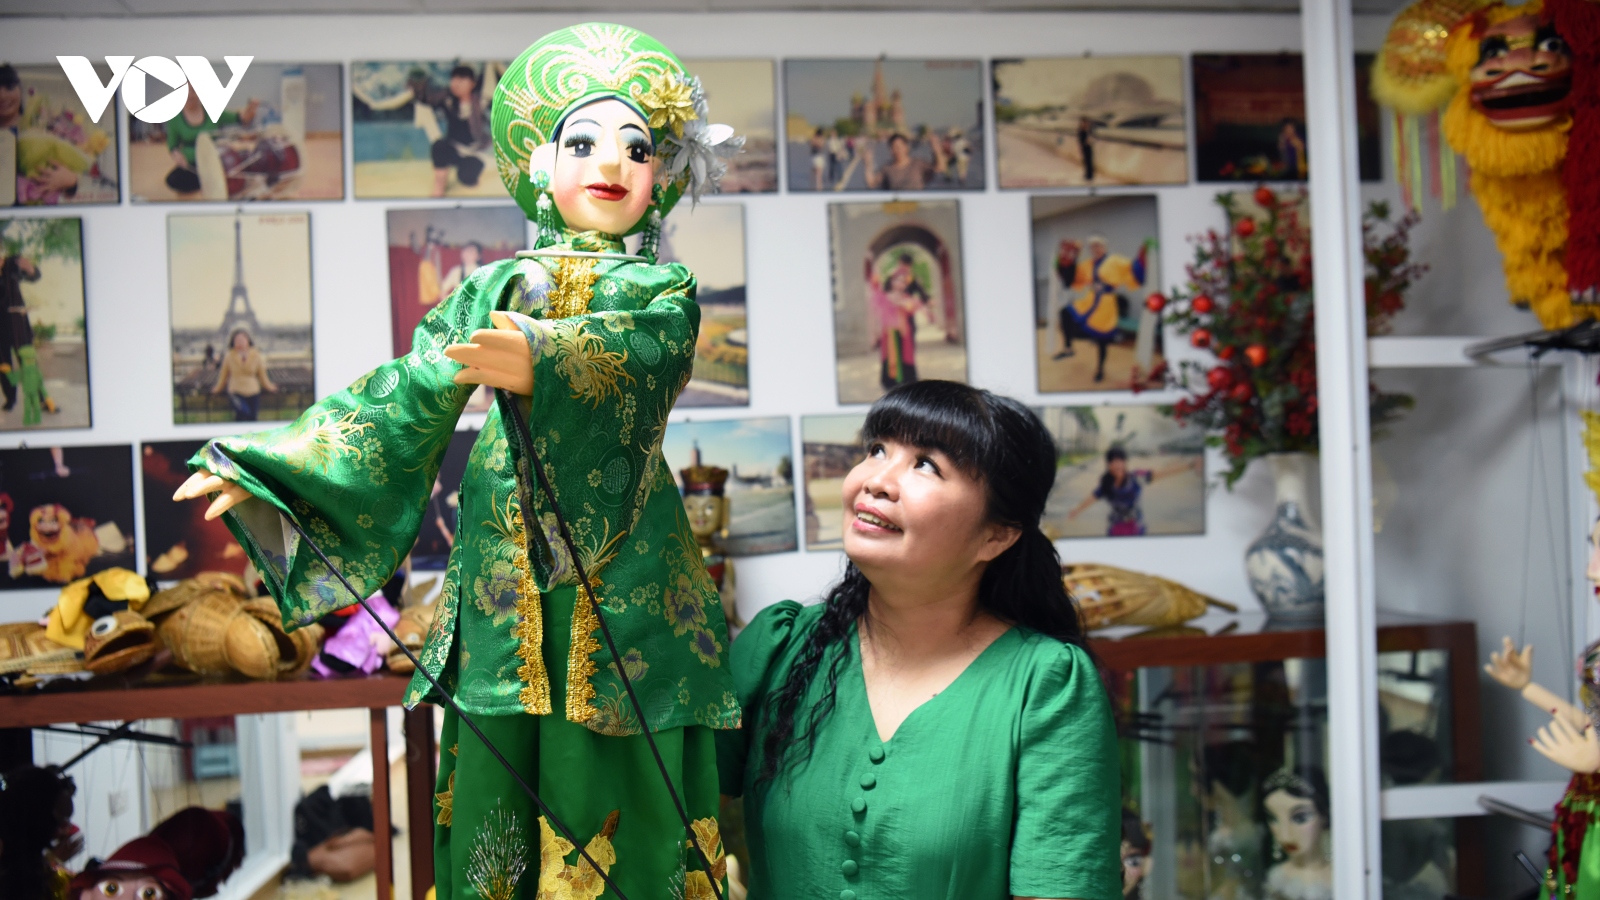 Người nghệ sĩ dùng rối cạn kể chuyện văn hóa Việt Nam